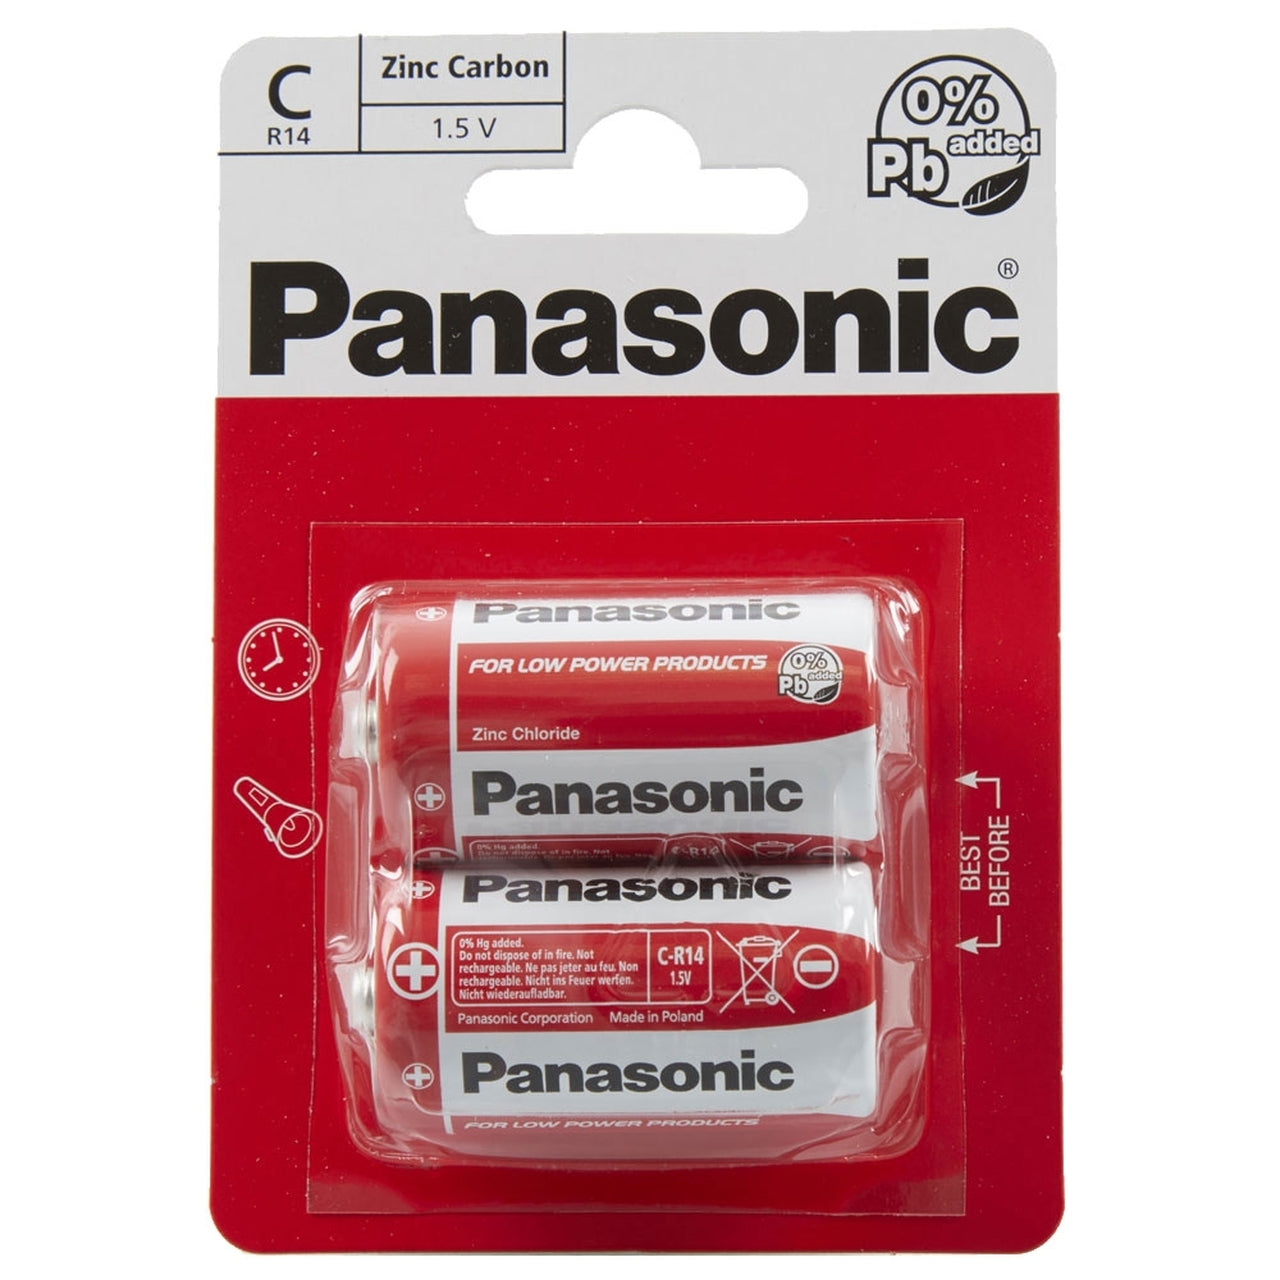 Panasonic C R14 Zinc Carbon Batteries (24pcs)